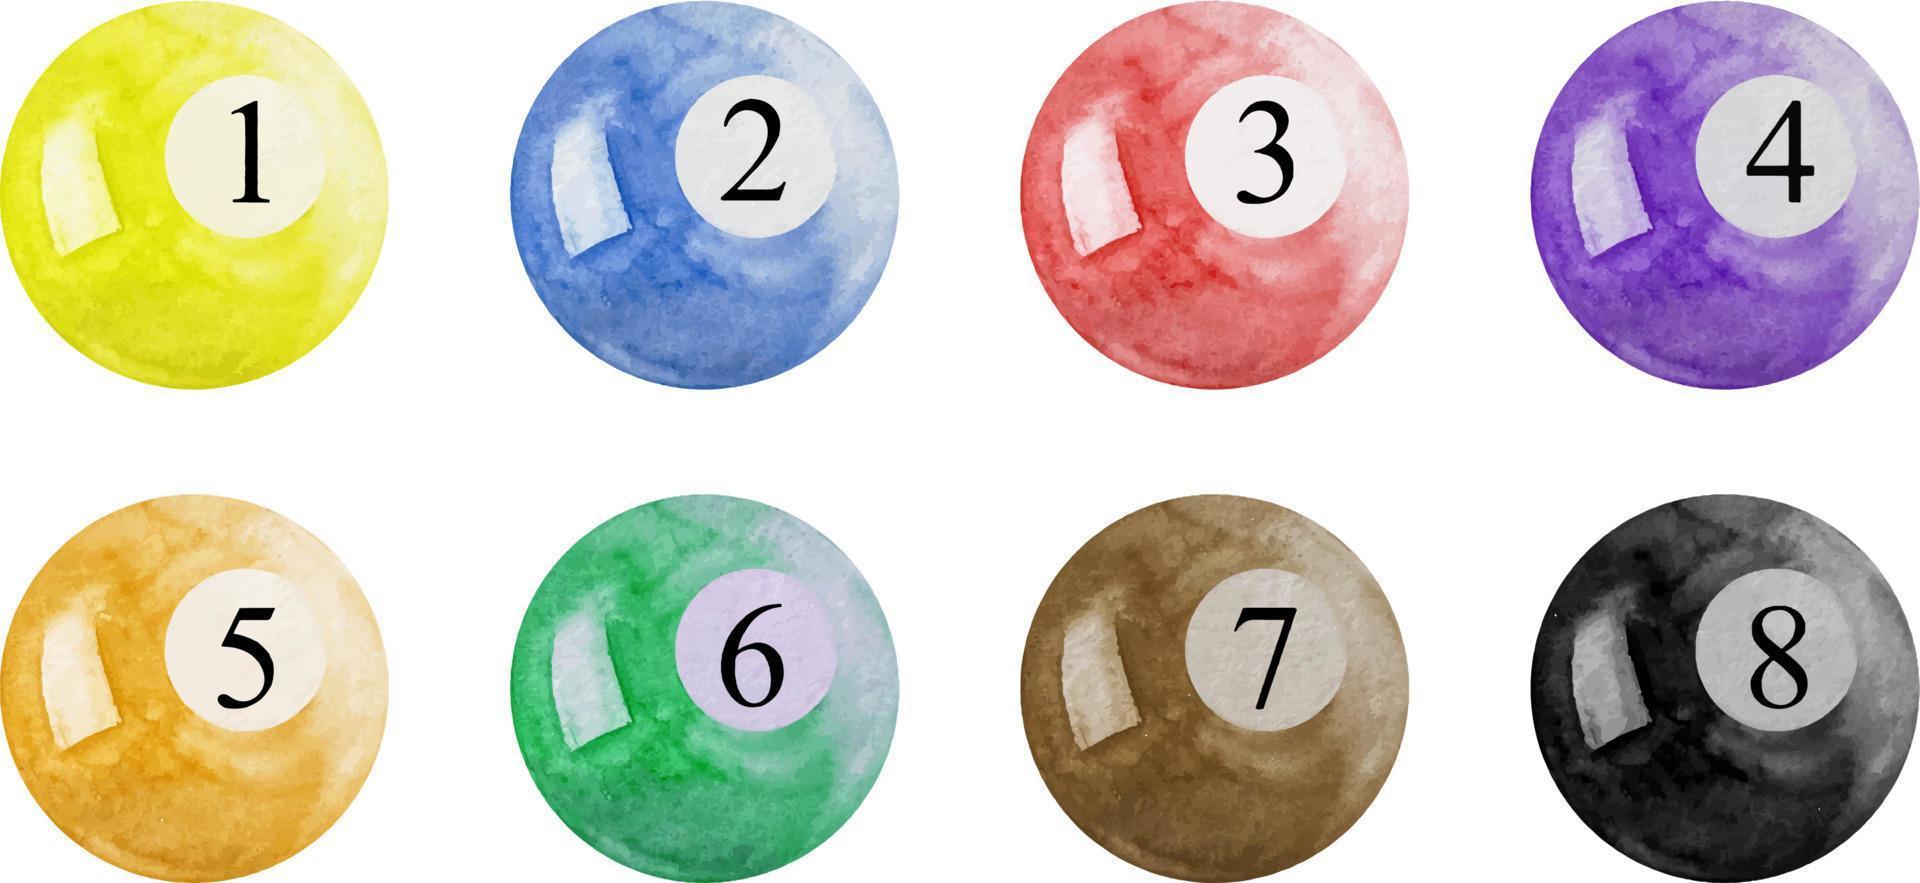 bolas de bilhar coloridas em aquarela. bolas de bilhar números 1 a 8 vetor